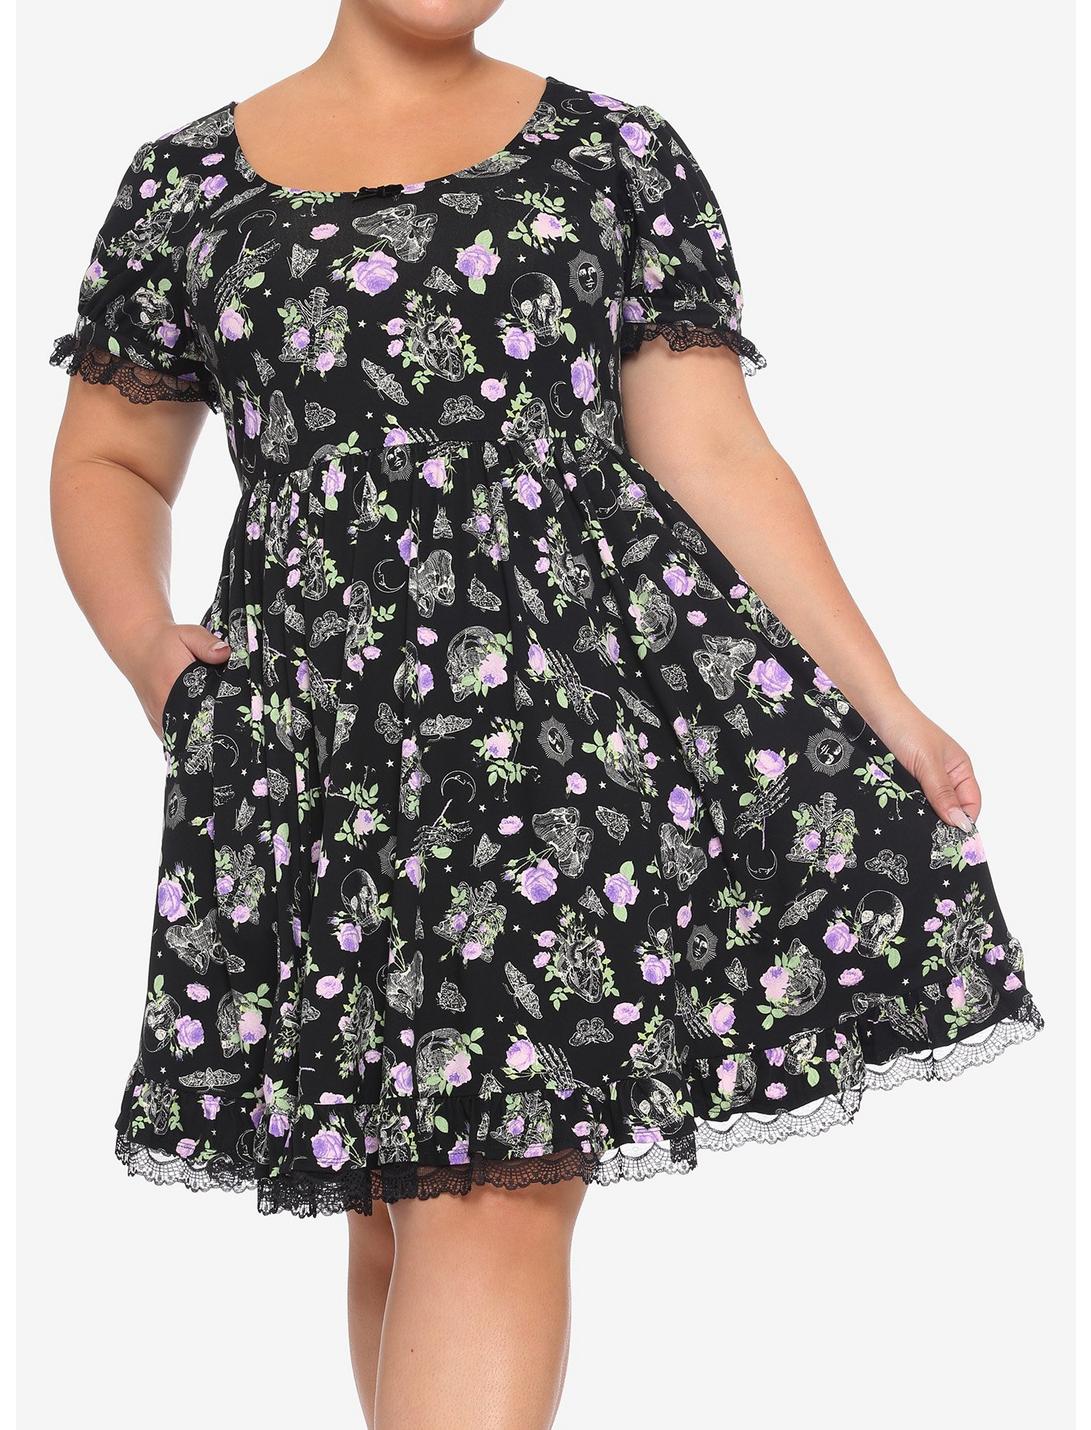 Floral Bones & Lace Skater Dress Plus Size, BLACK, hi-res